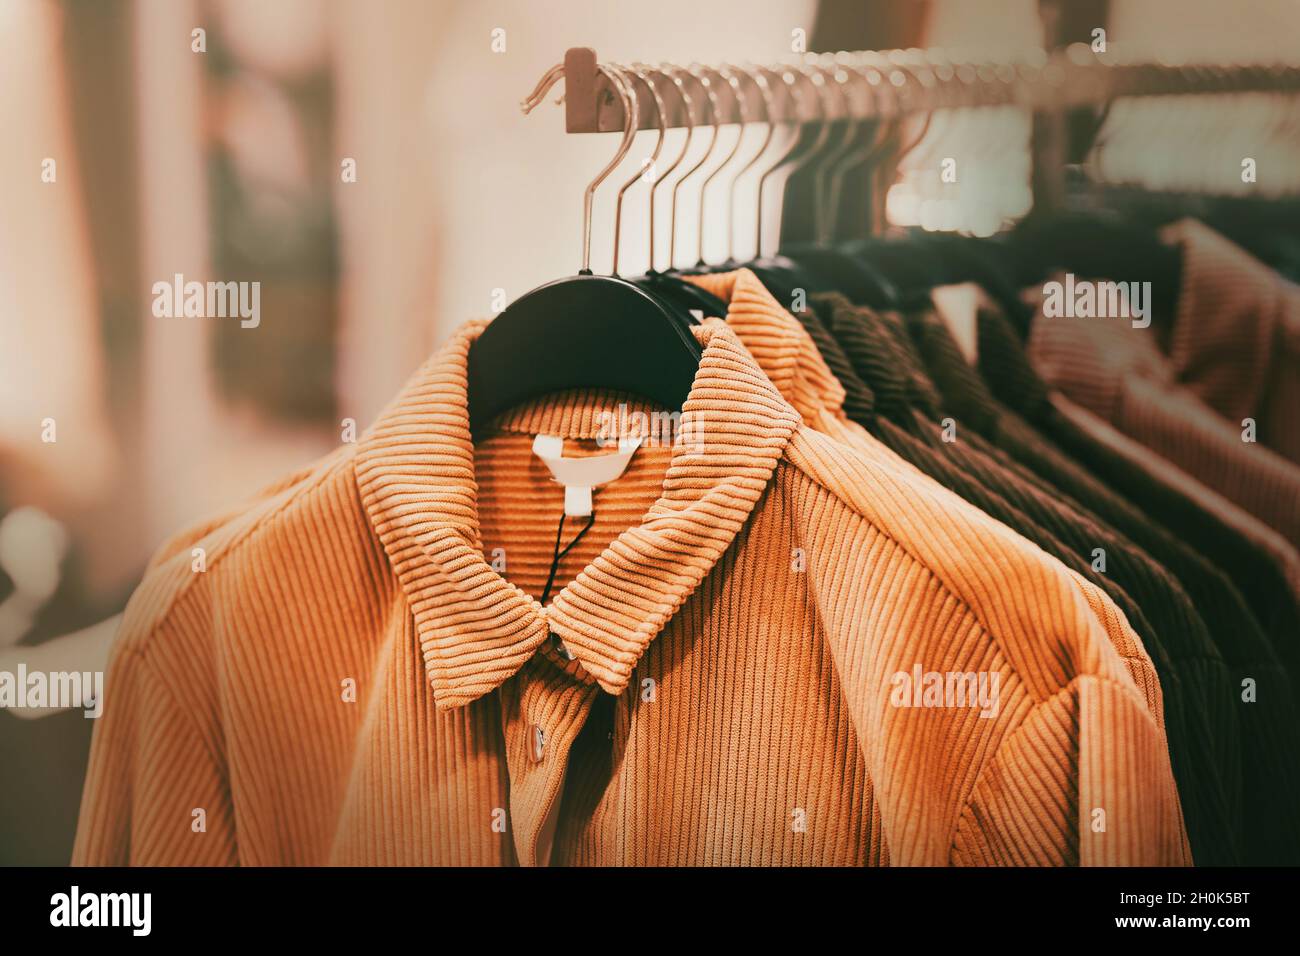 In einem Bekleidungsgeschäft im Einkaufszentrum hängen wunderschöne Cord-Mäntel für die Herbstsaison in Ingwer- und Brauntönen an Kleiderbügeln. Einkaufen. Stockfoto